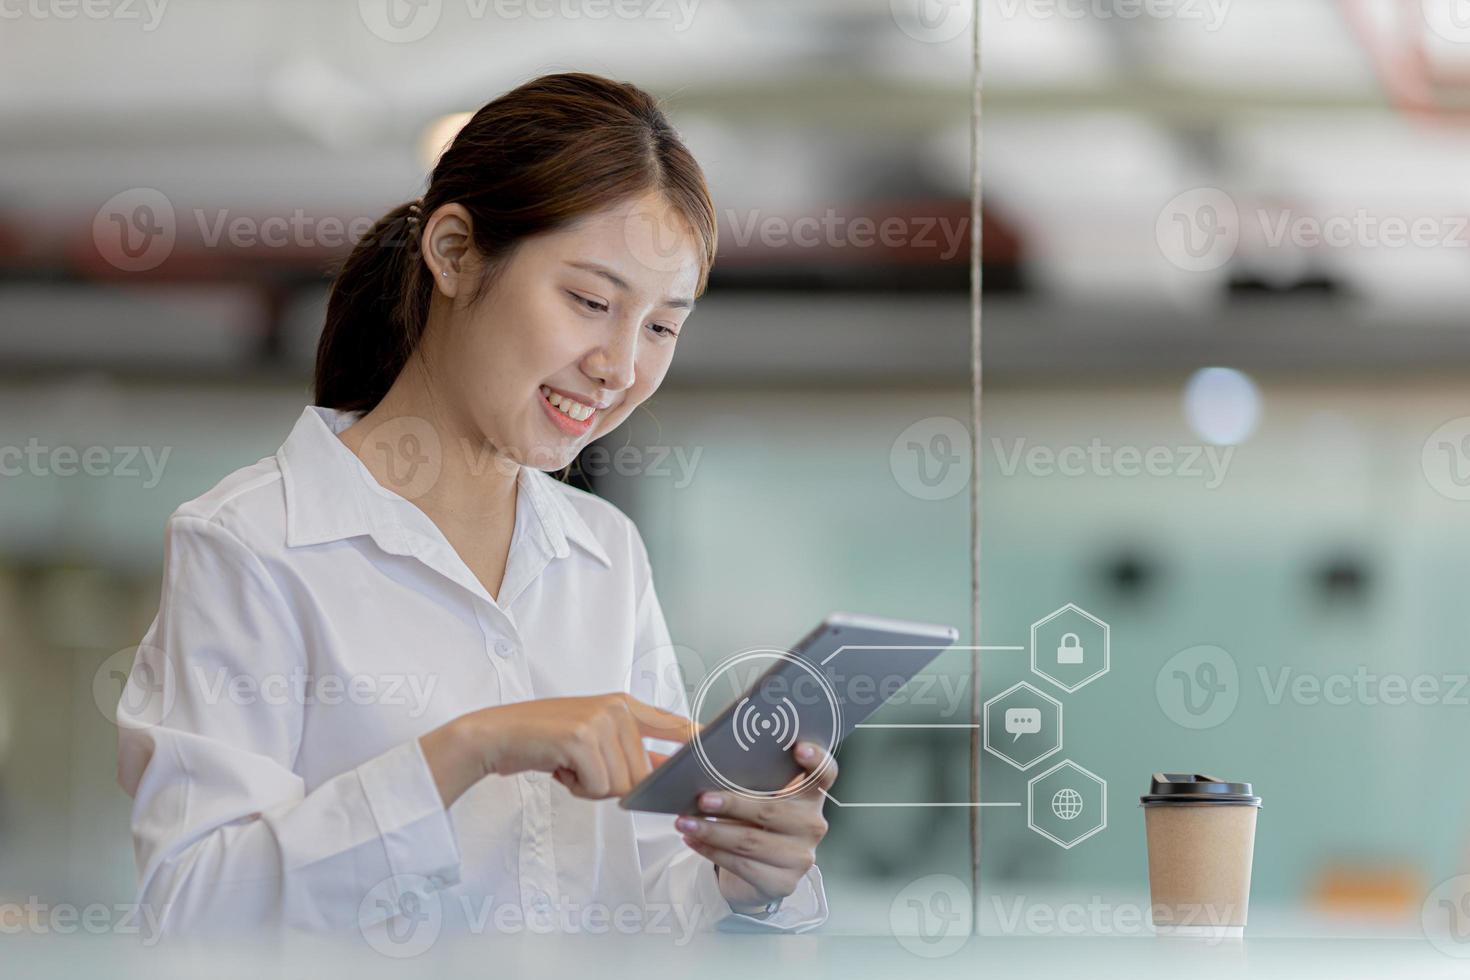 donna asiatica che usa il tablet per chattare con gli amici e cercare nel browser web utilizzando il wifi, mostrando il diagramma dell'icona di accesso, chattando su messenger, cercando informazioni tramite un browser web. concetto di tecnologia. foto